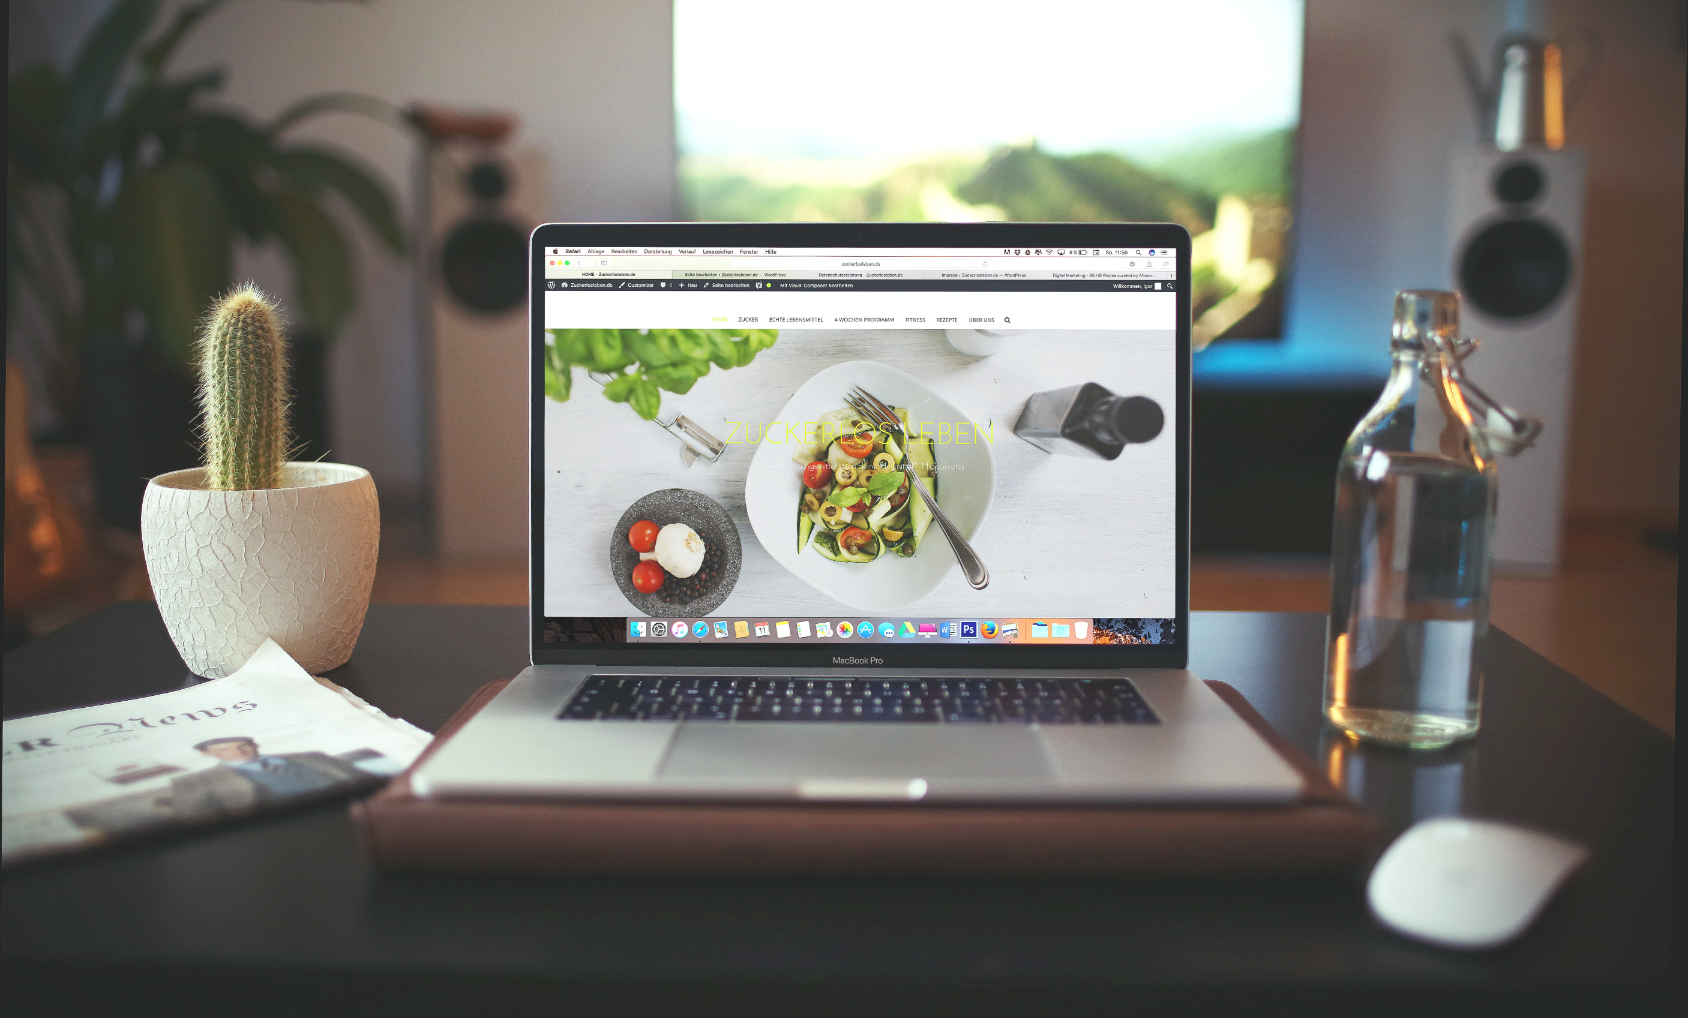 An open laptop showing a well-designed restaurant website